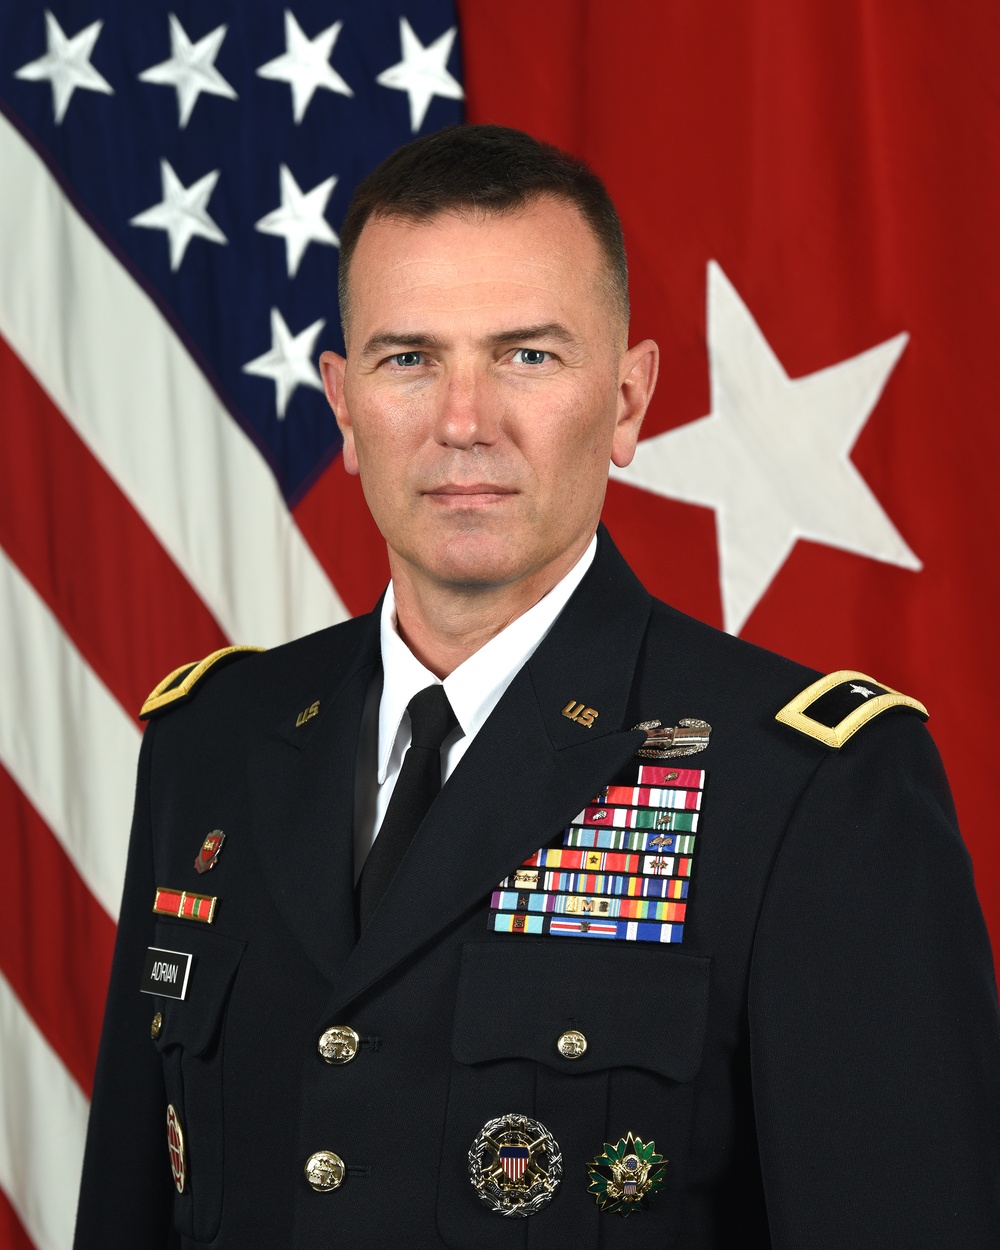 U.S. Army Brig. Gen. Anthony Adrian